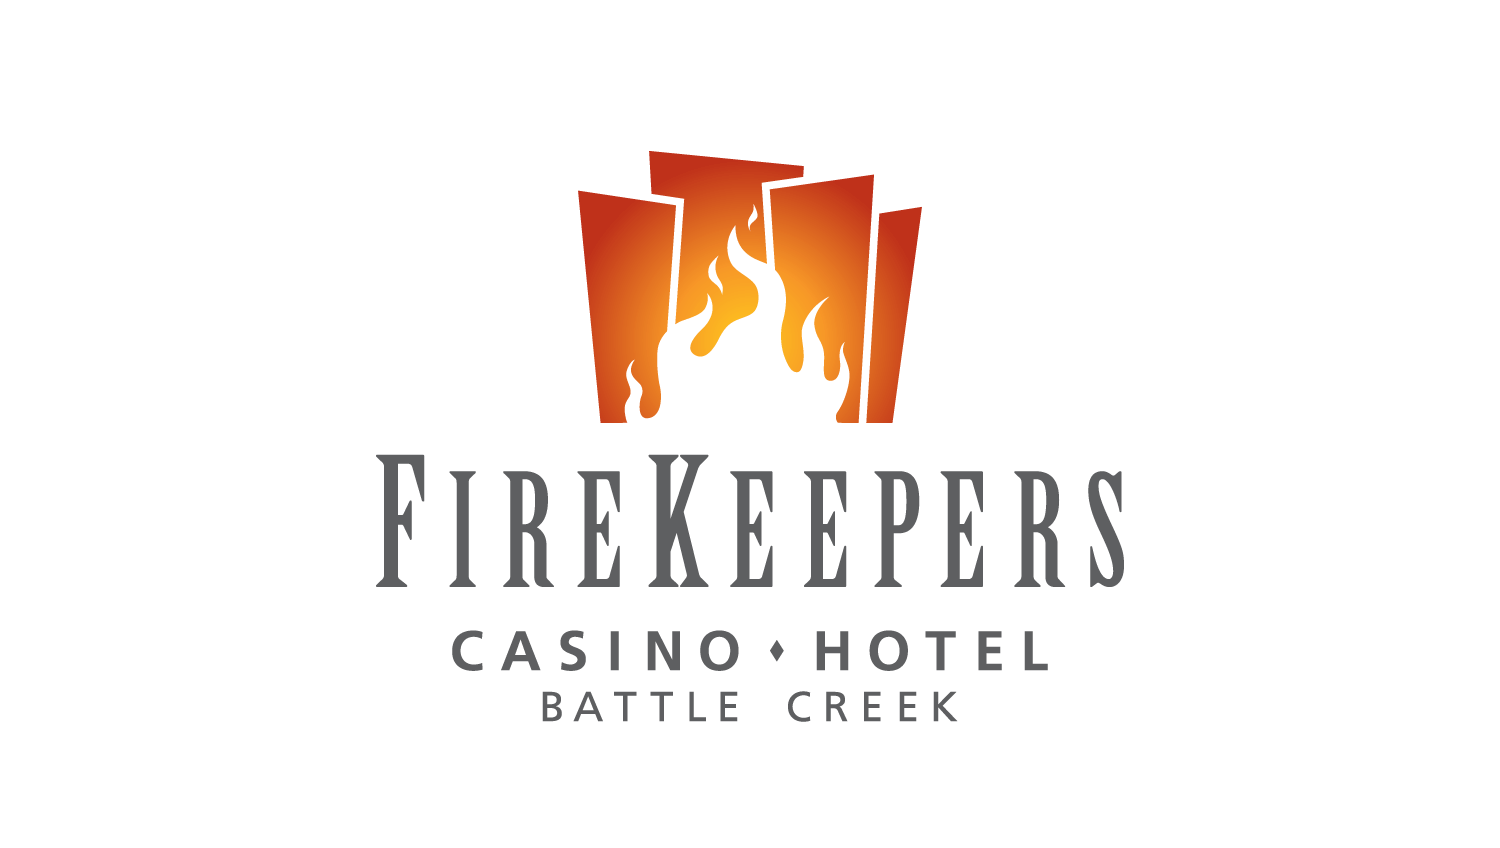 FireKeepers Casino/Hotel: Battle Creek logo